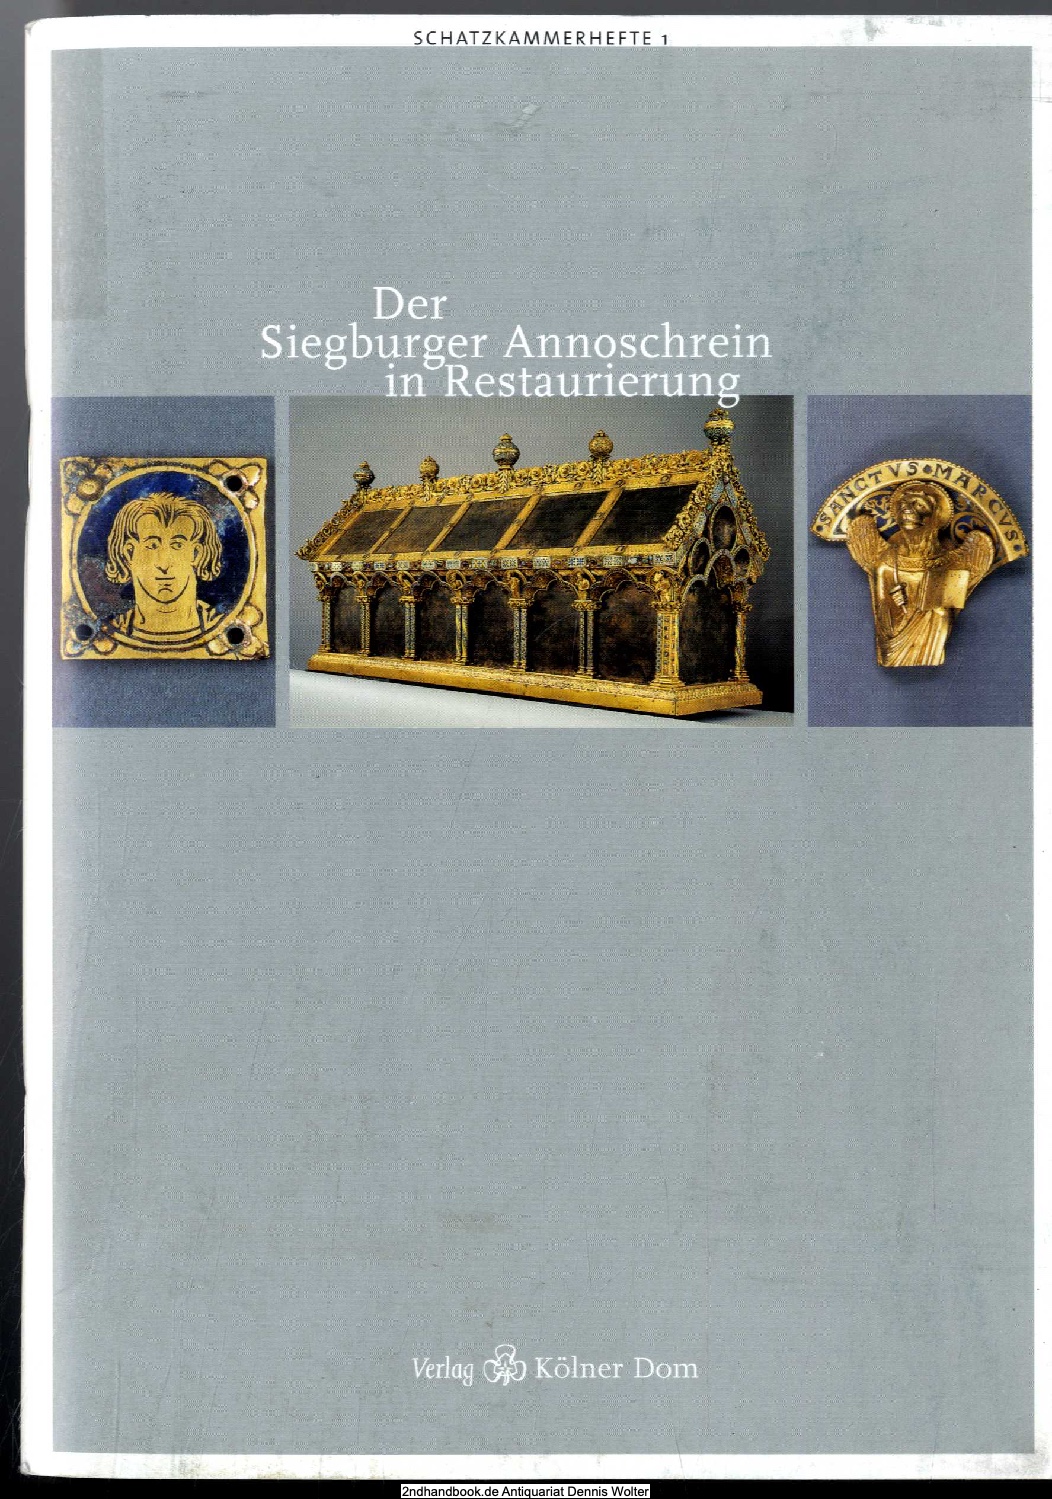 Der Siegburger Annoschrein in Restaurierung : Katalog zur Ausstellung in der Schatzkammer des Kölner Domes, 18. Juli 2002 - 12. Januar 2003 - Becks, Leonie (Herausgeber)